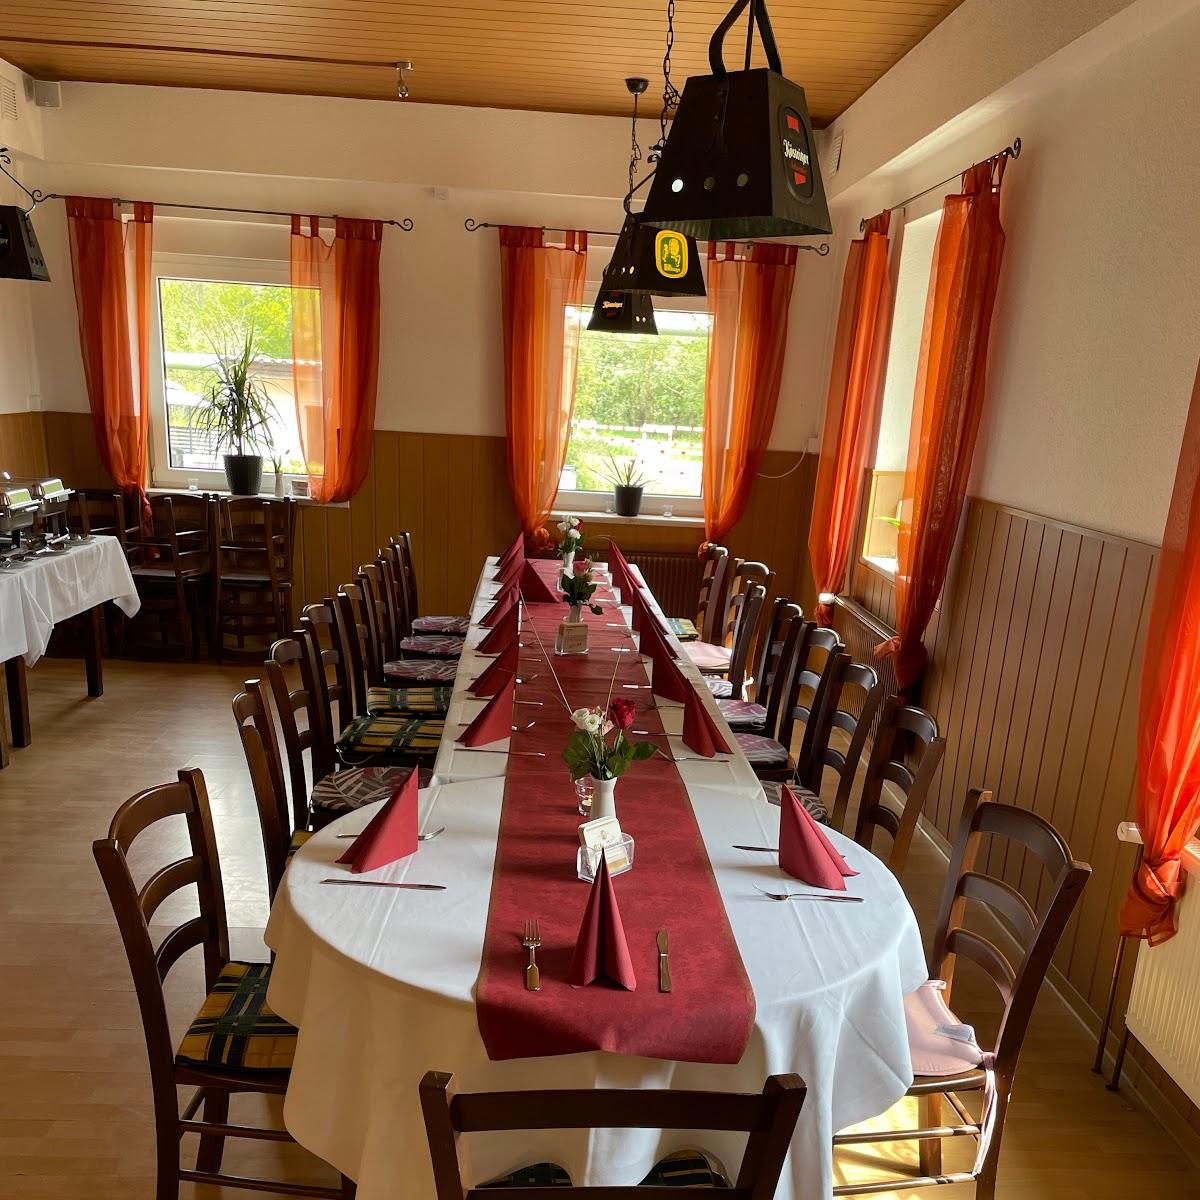 Restaurant "Riekchen" in Dessau-Roßlau